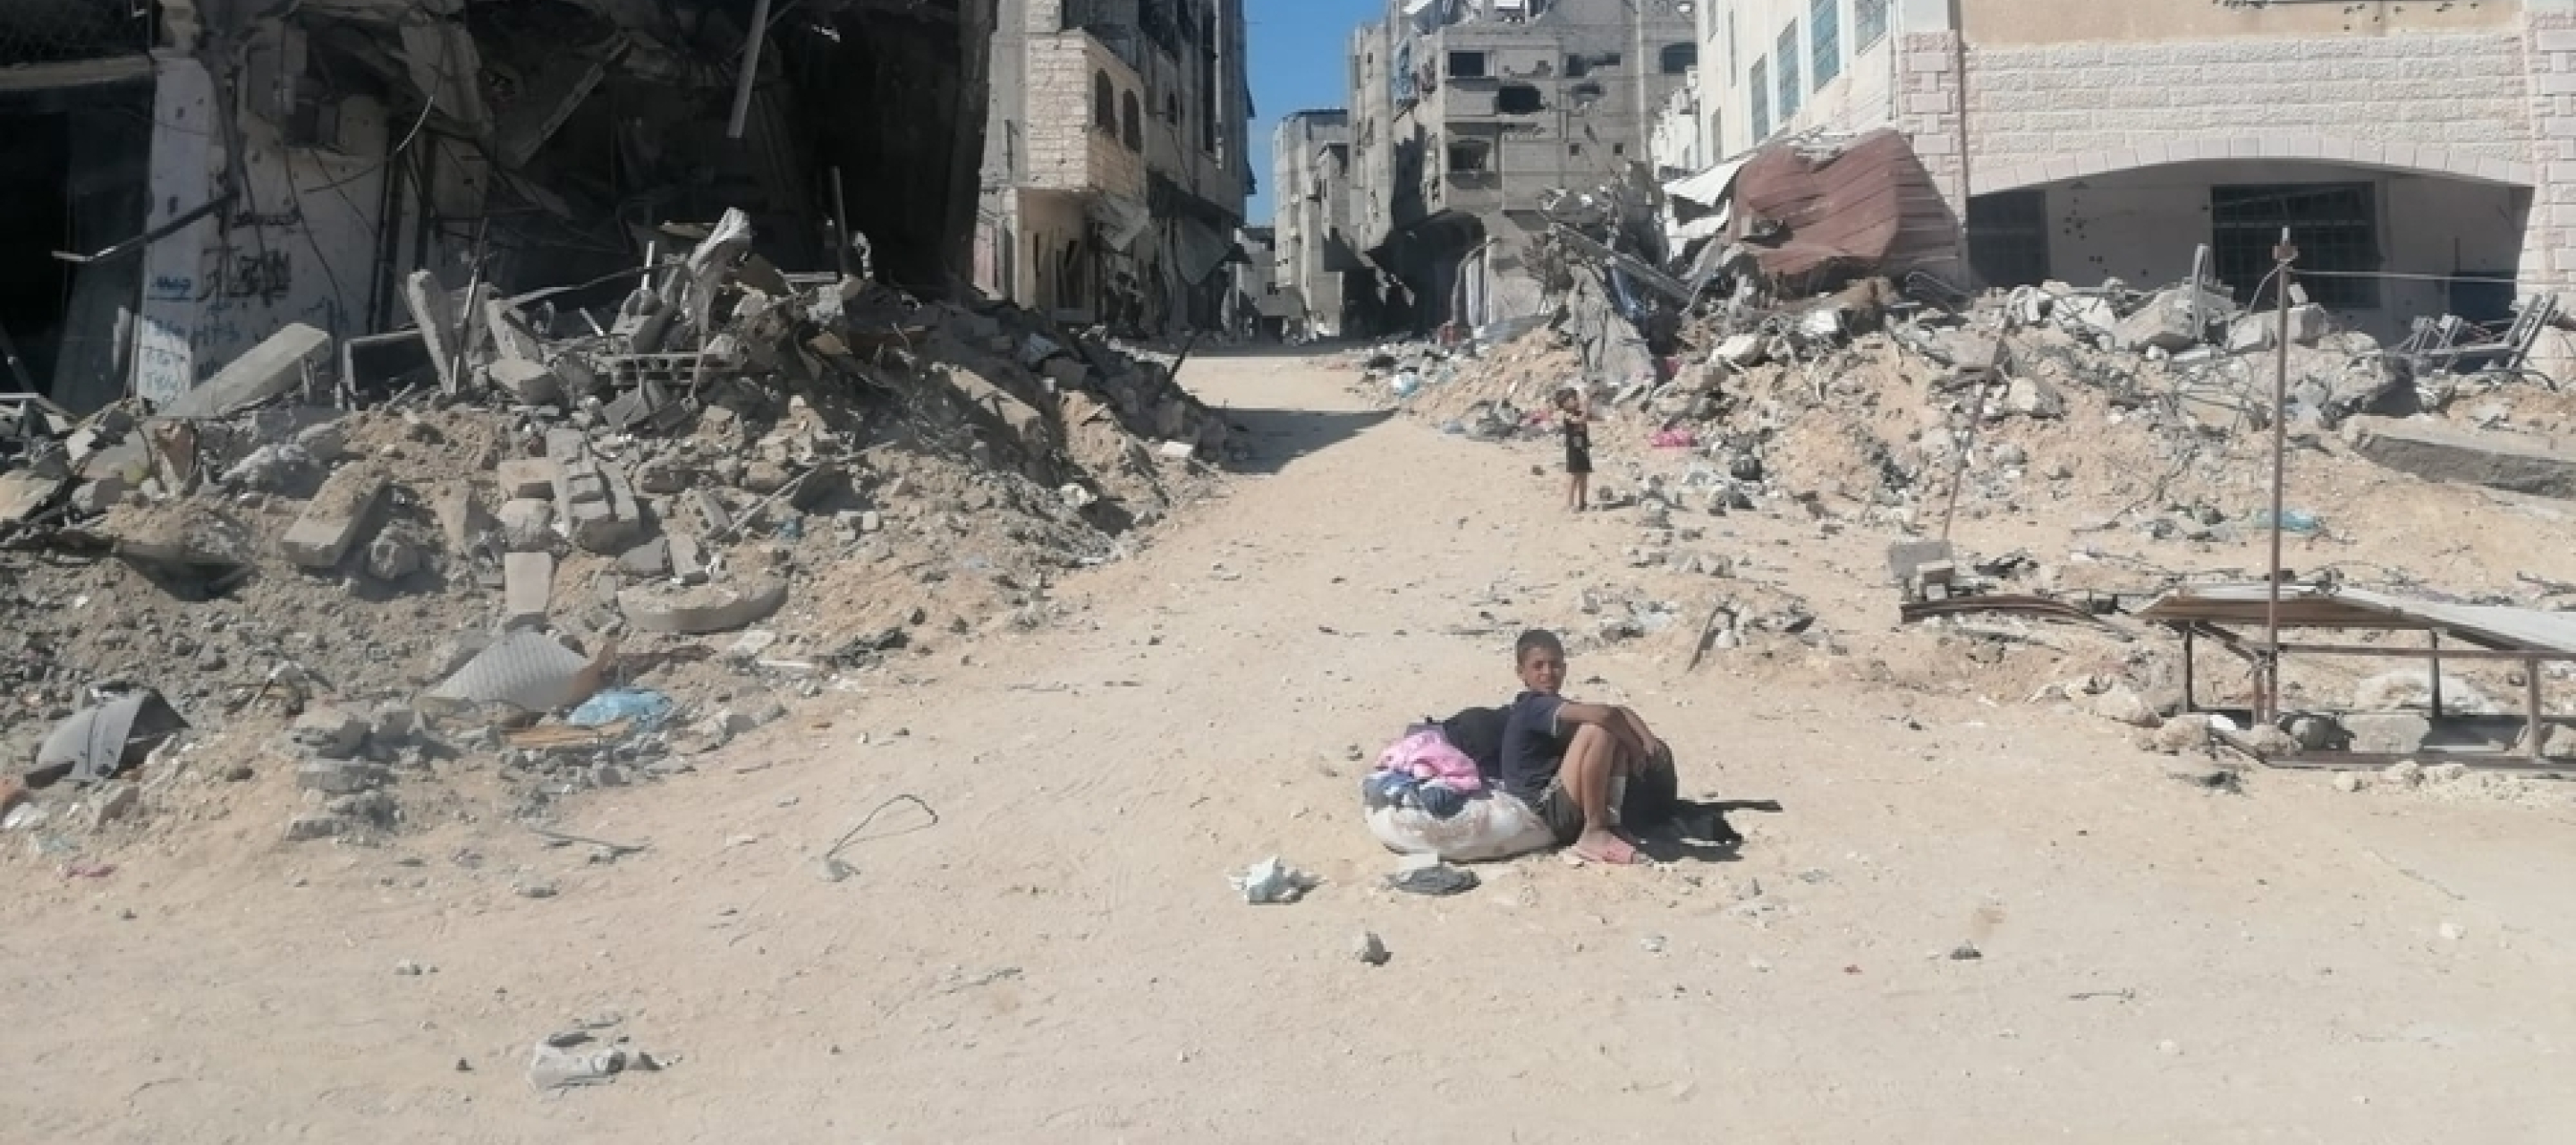 Junge sitzt auf Sandstraße in zerstörter Stadt